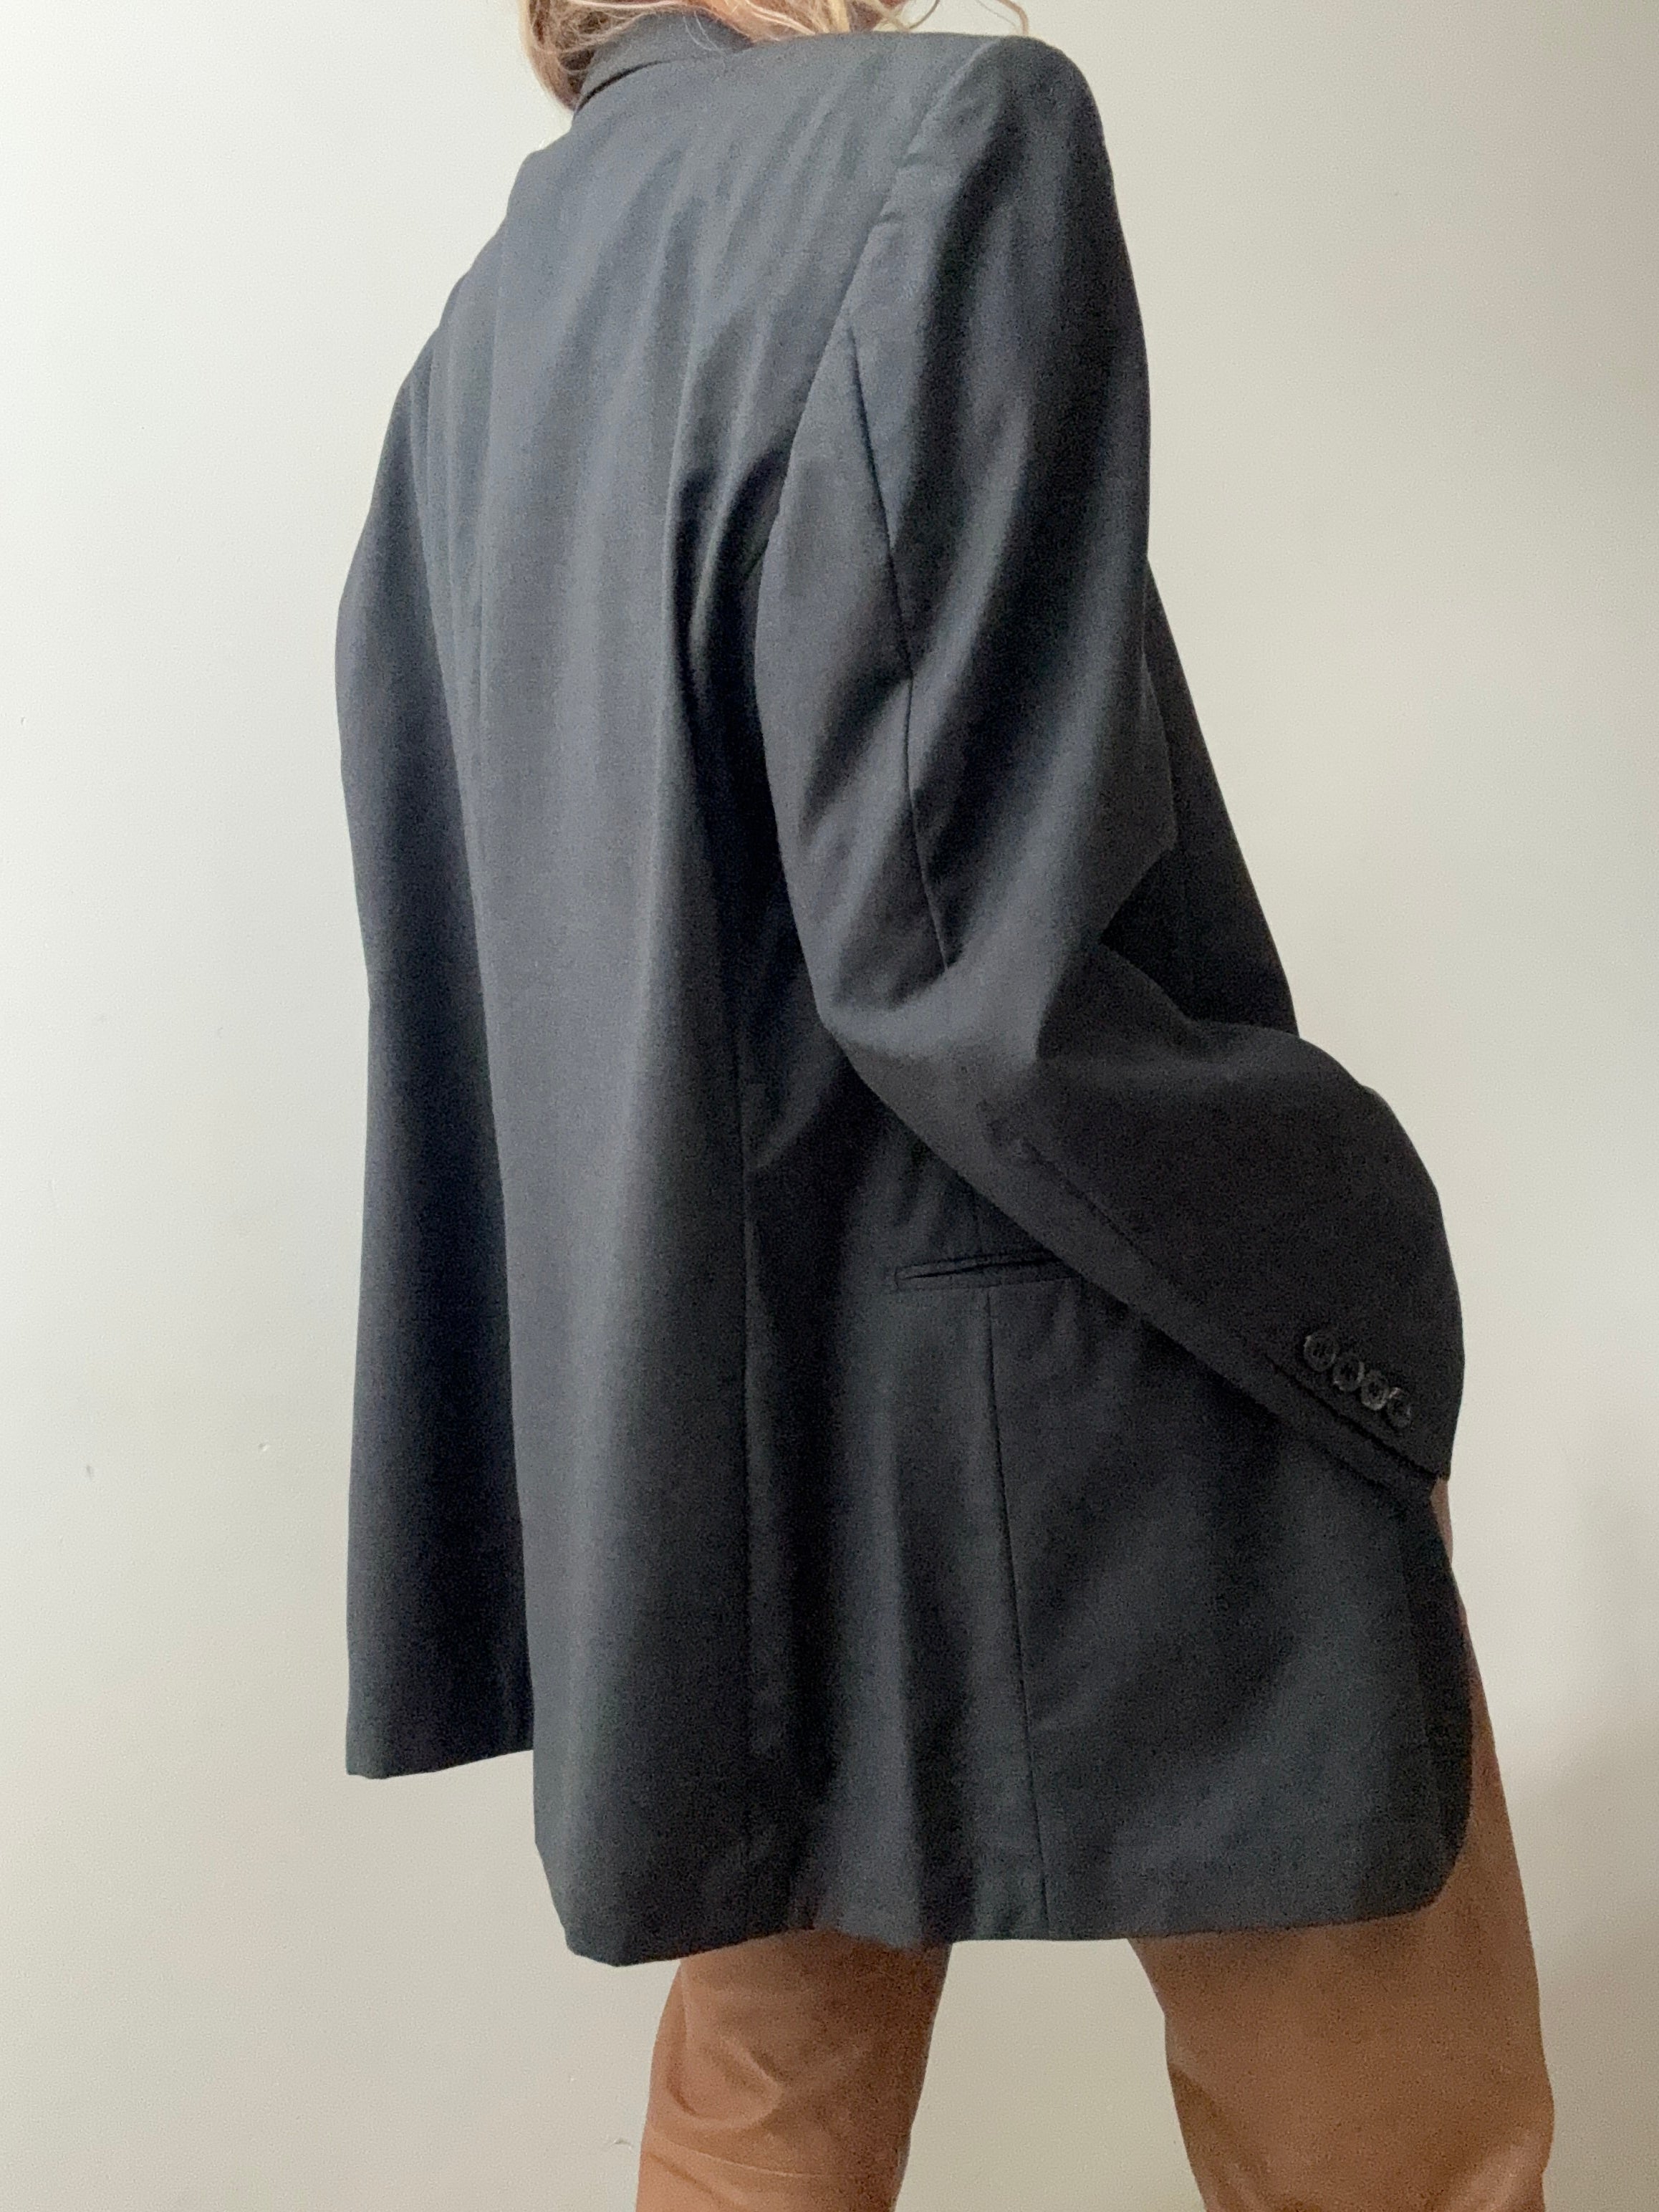 YSL Jackets Large Vintage Charcoal Grey Designer Blazer